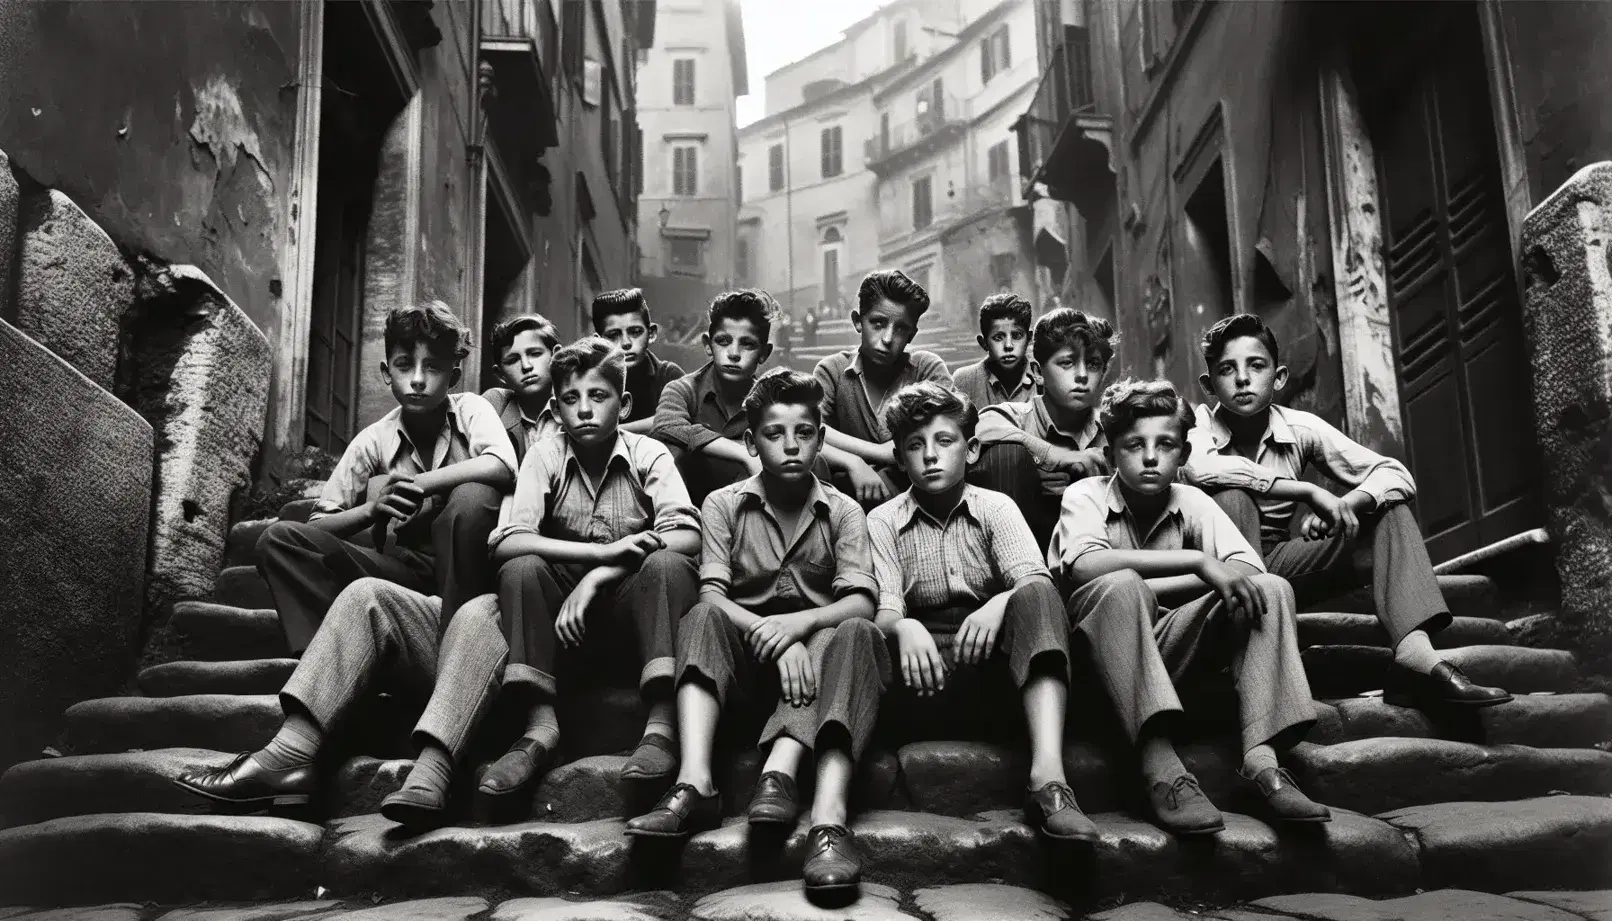 Ragazzi italiani degli anni '50 seduti su scalinata in quartiere romano, con abiti semplici e sguardi pensierosi, sfondo di edifici antichi.